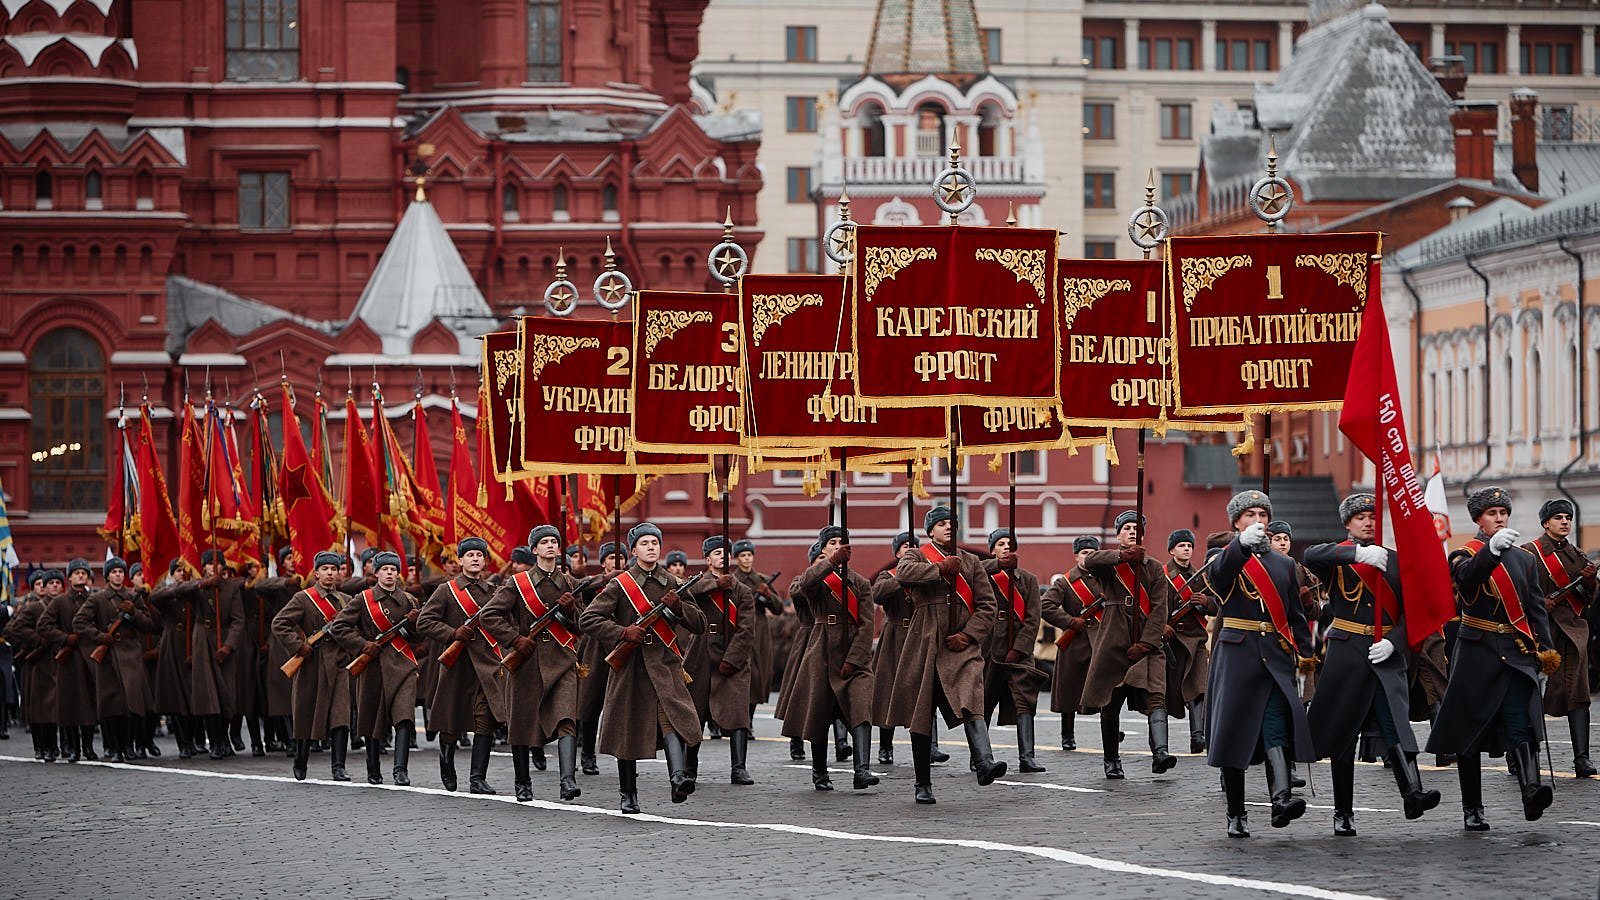 9 мая фронт. 24 Июня парад Победы в Москве 1945. Парад Победы на красной площади 1945. Парад 24 июня 1945 года в Москве на красной площади. Знамя Победы на параде Победы 1945 года.